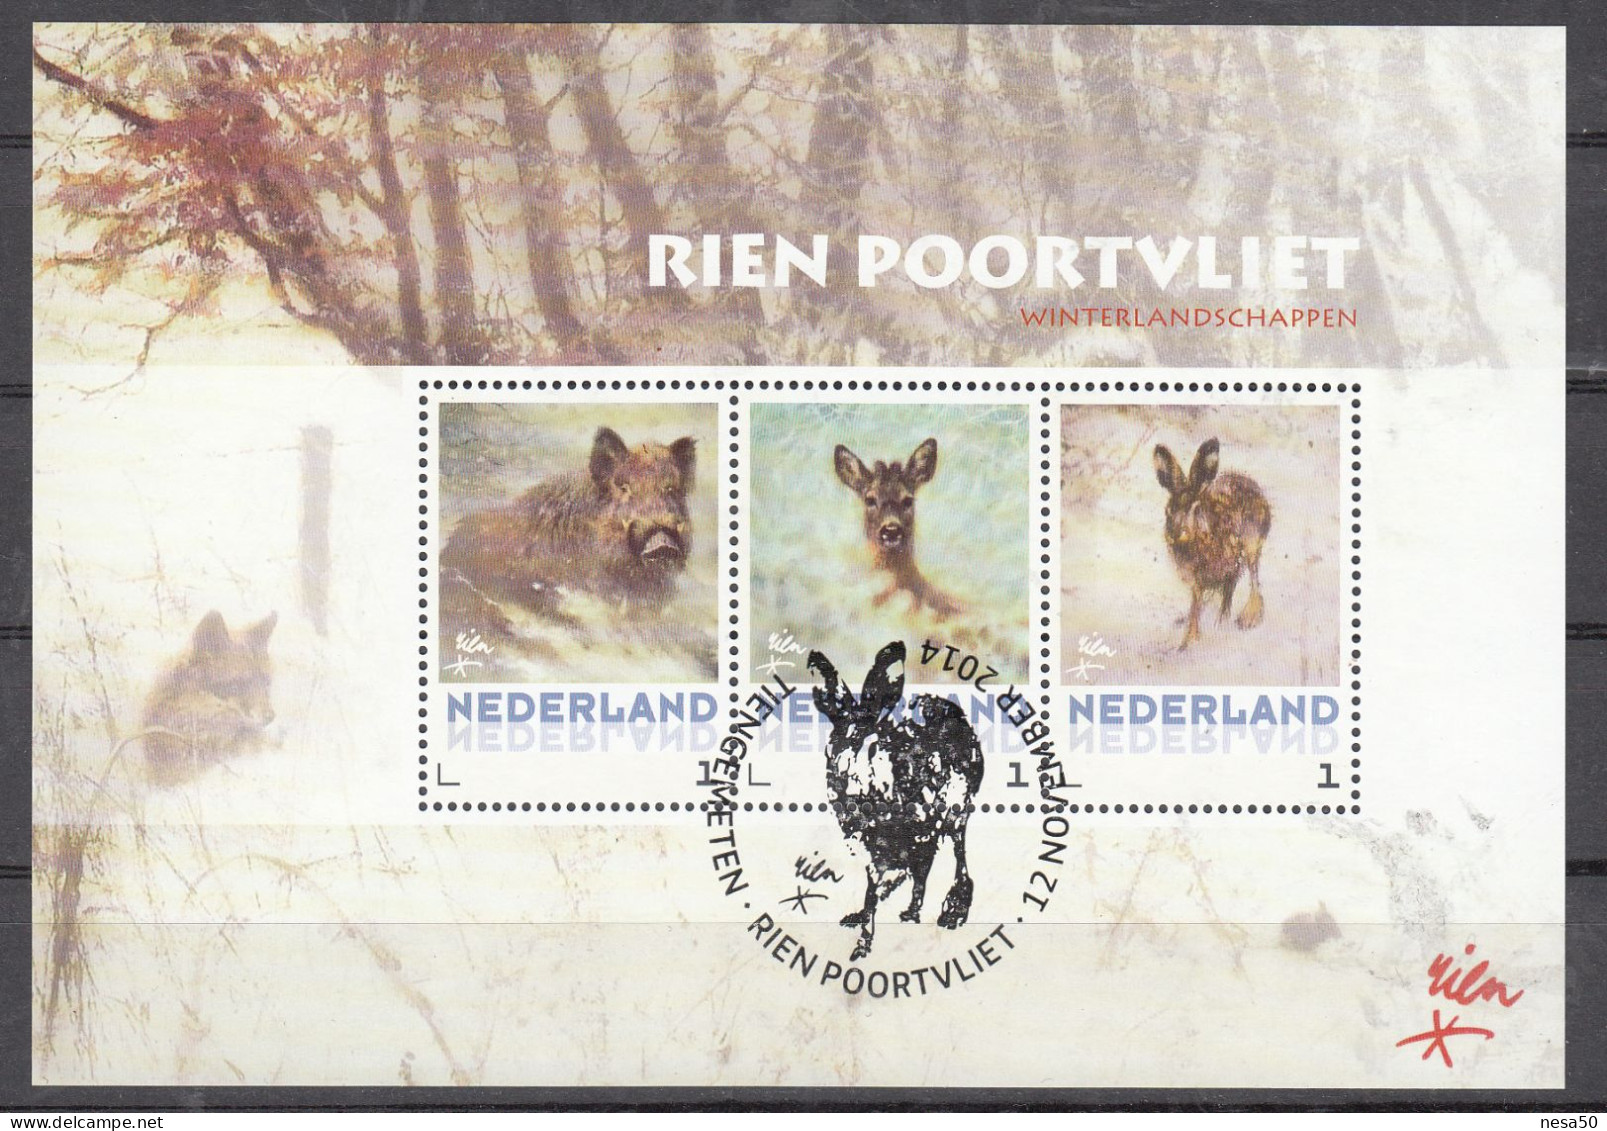 Nederland Persoonlijke Zegel, Rien Poortvliet, Wild Zwijn, Hert, Haas, Wild Boar, Deer, Hare, Speciale Stempel - Gebraucht